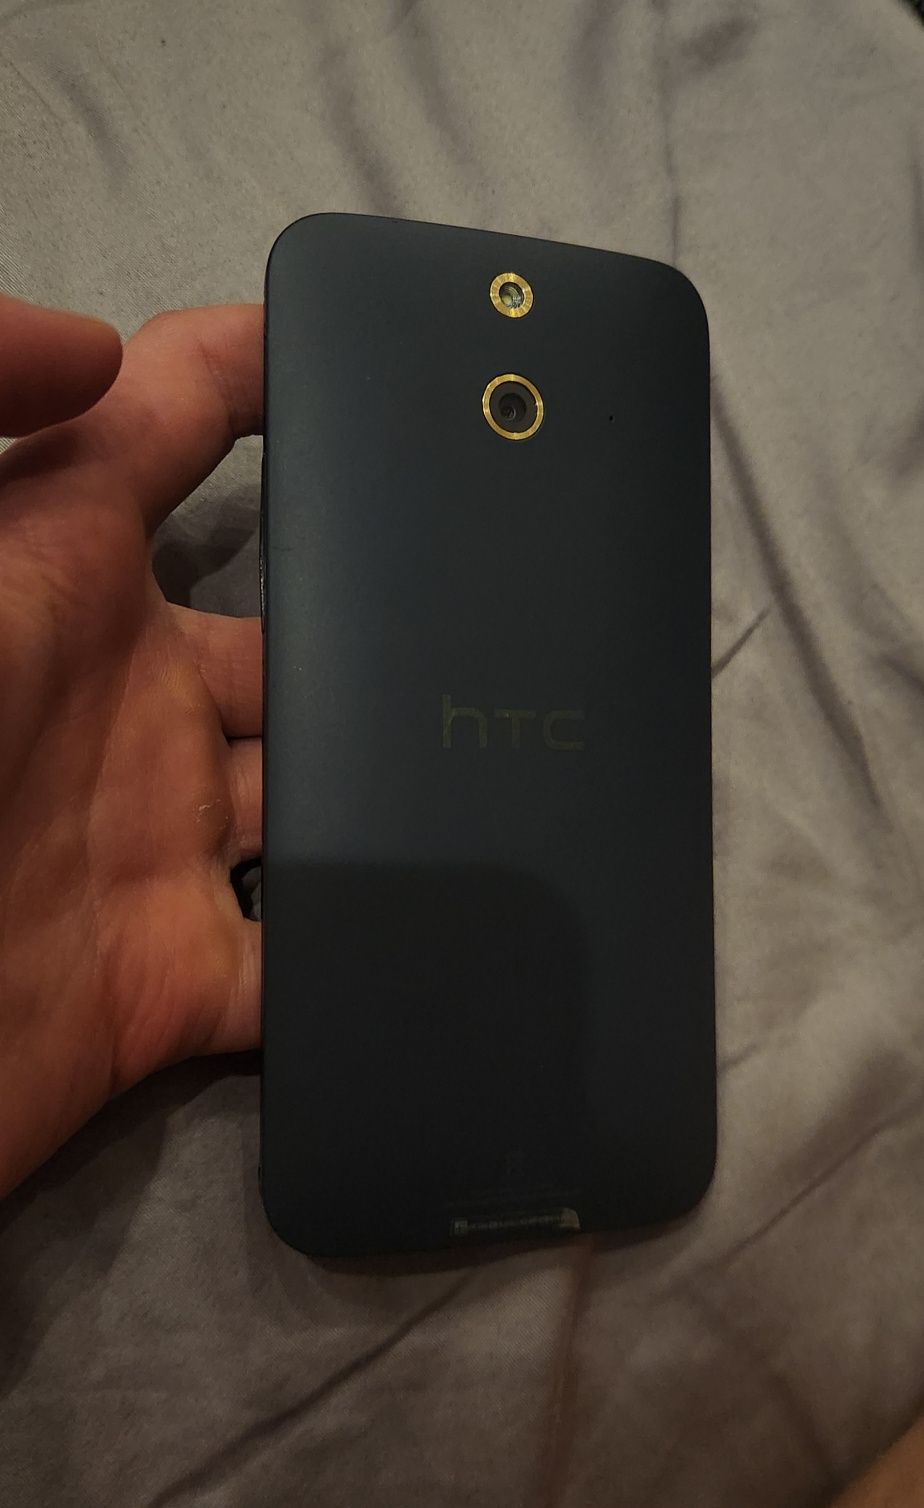 HTC ONE E8 dual sim